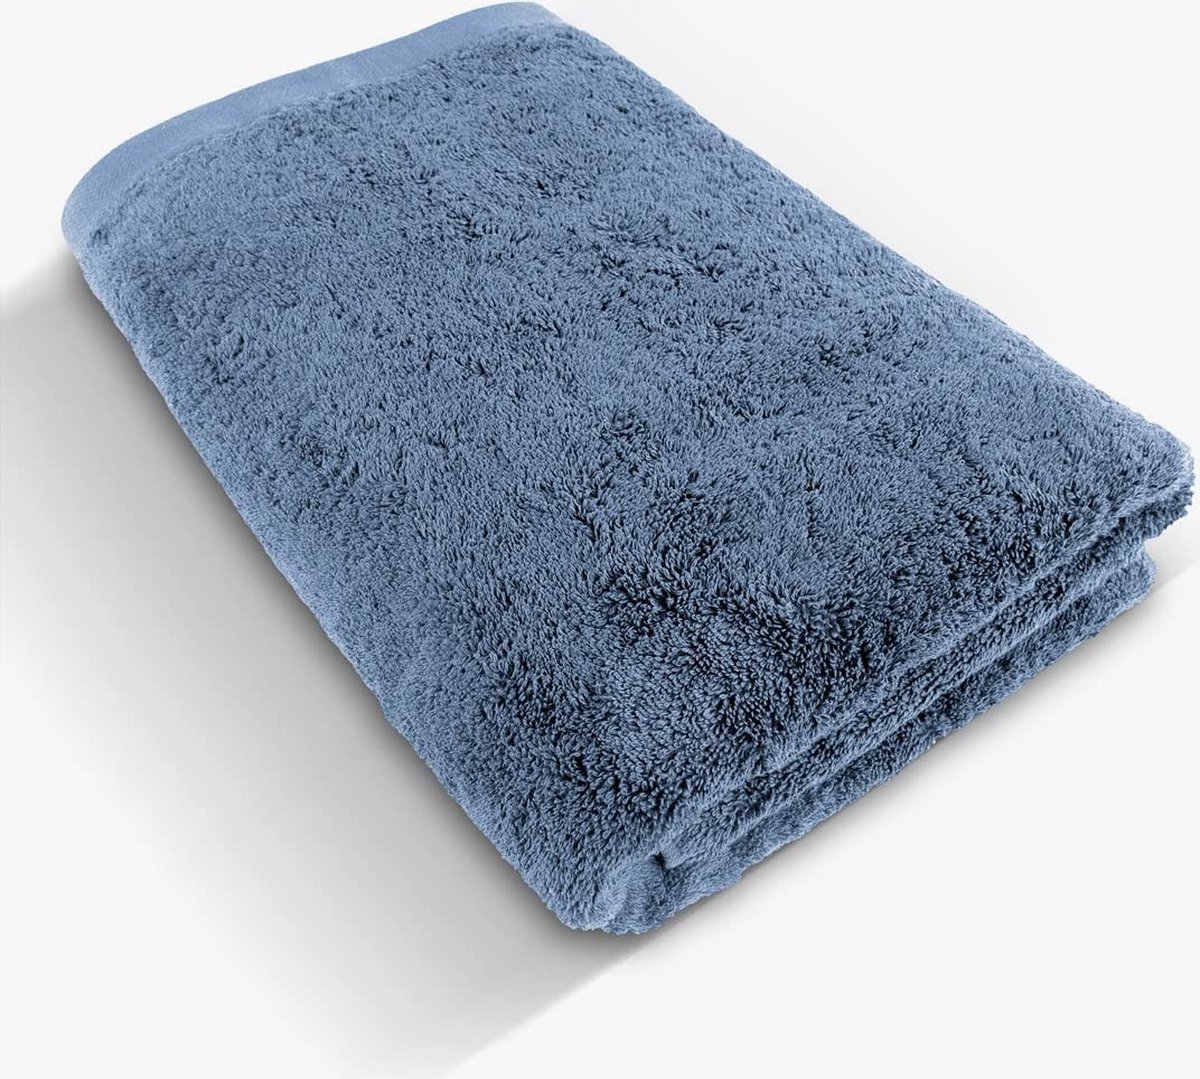 herzbach home luxe sauna handdoek premium kwaliteit gemaakt van 100% egyptisch katoen 86 x 200 cm 600 g/m² (grijsblauw)